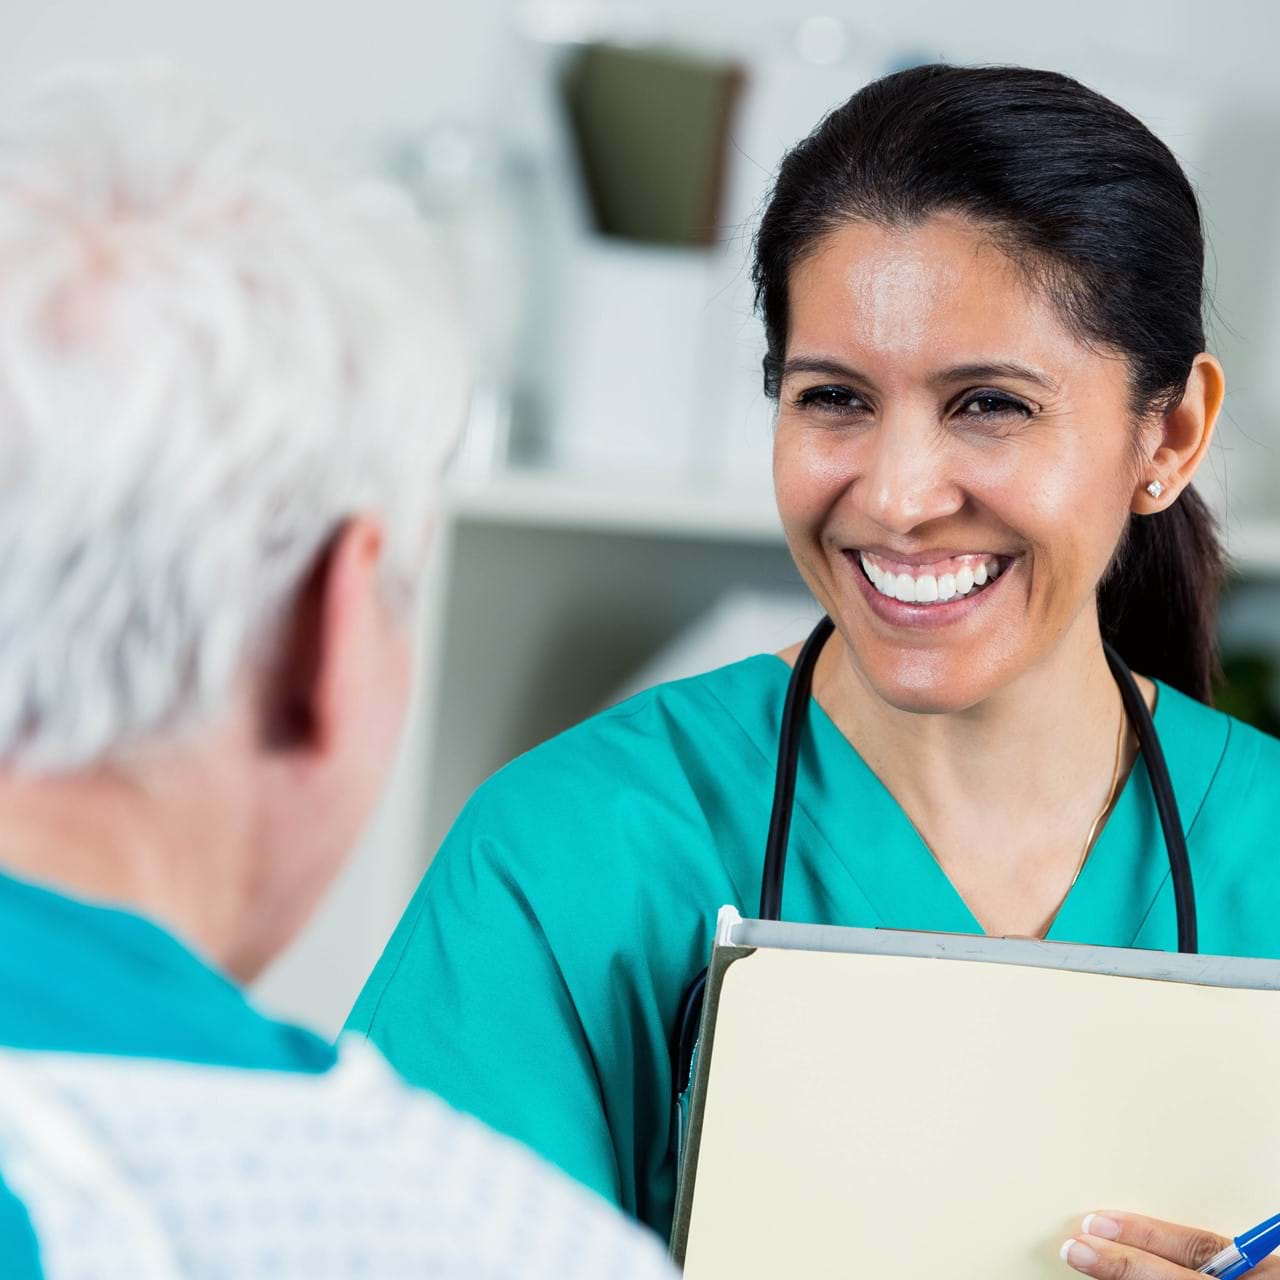 Nurse smiling at patient